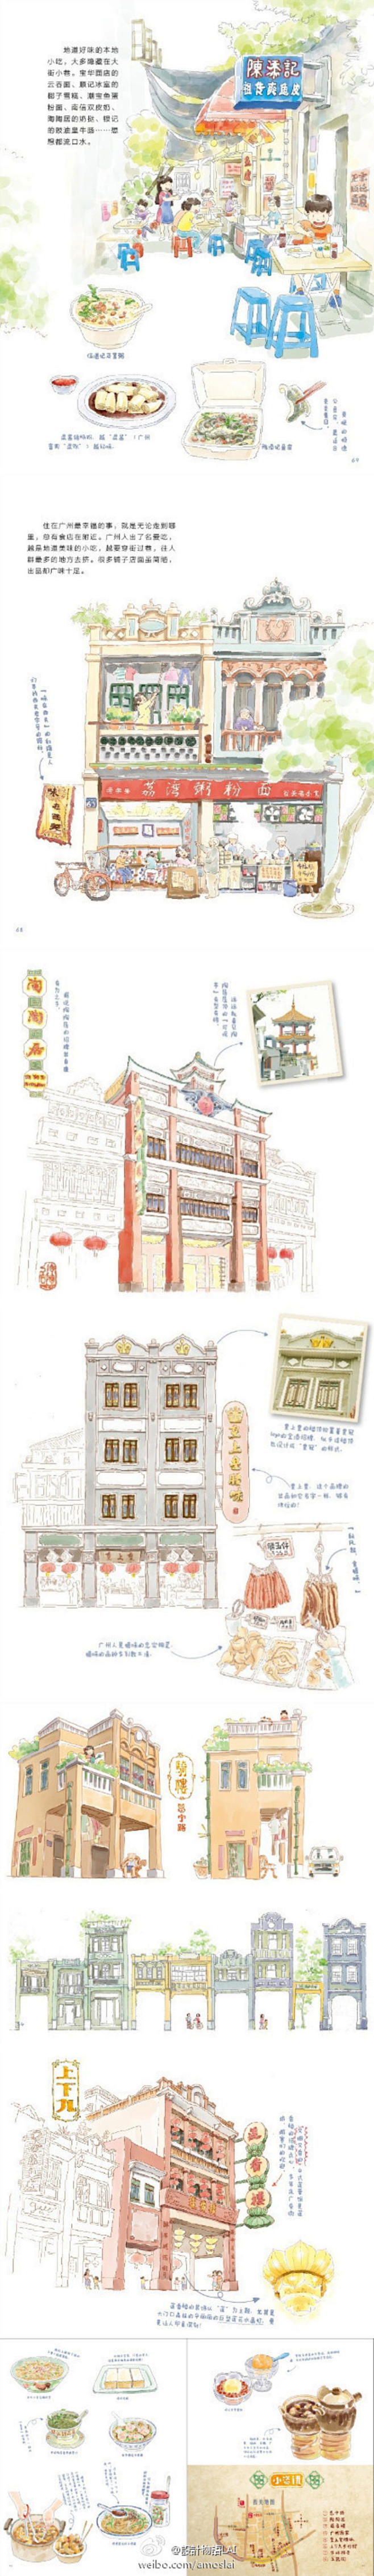 手绘城市广州西关骑楼下的风景在窄窄的街道两旁一栋栋房子好像长了脚